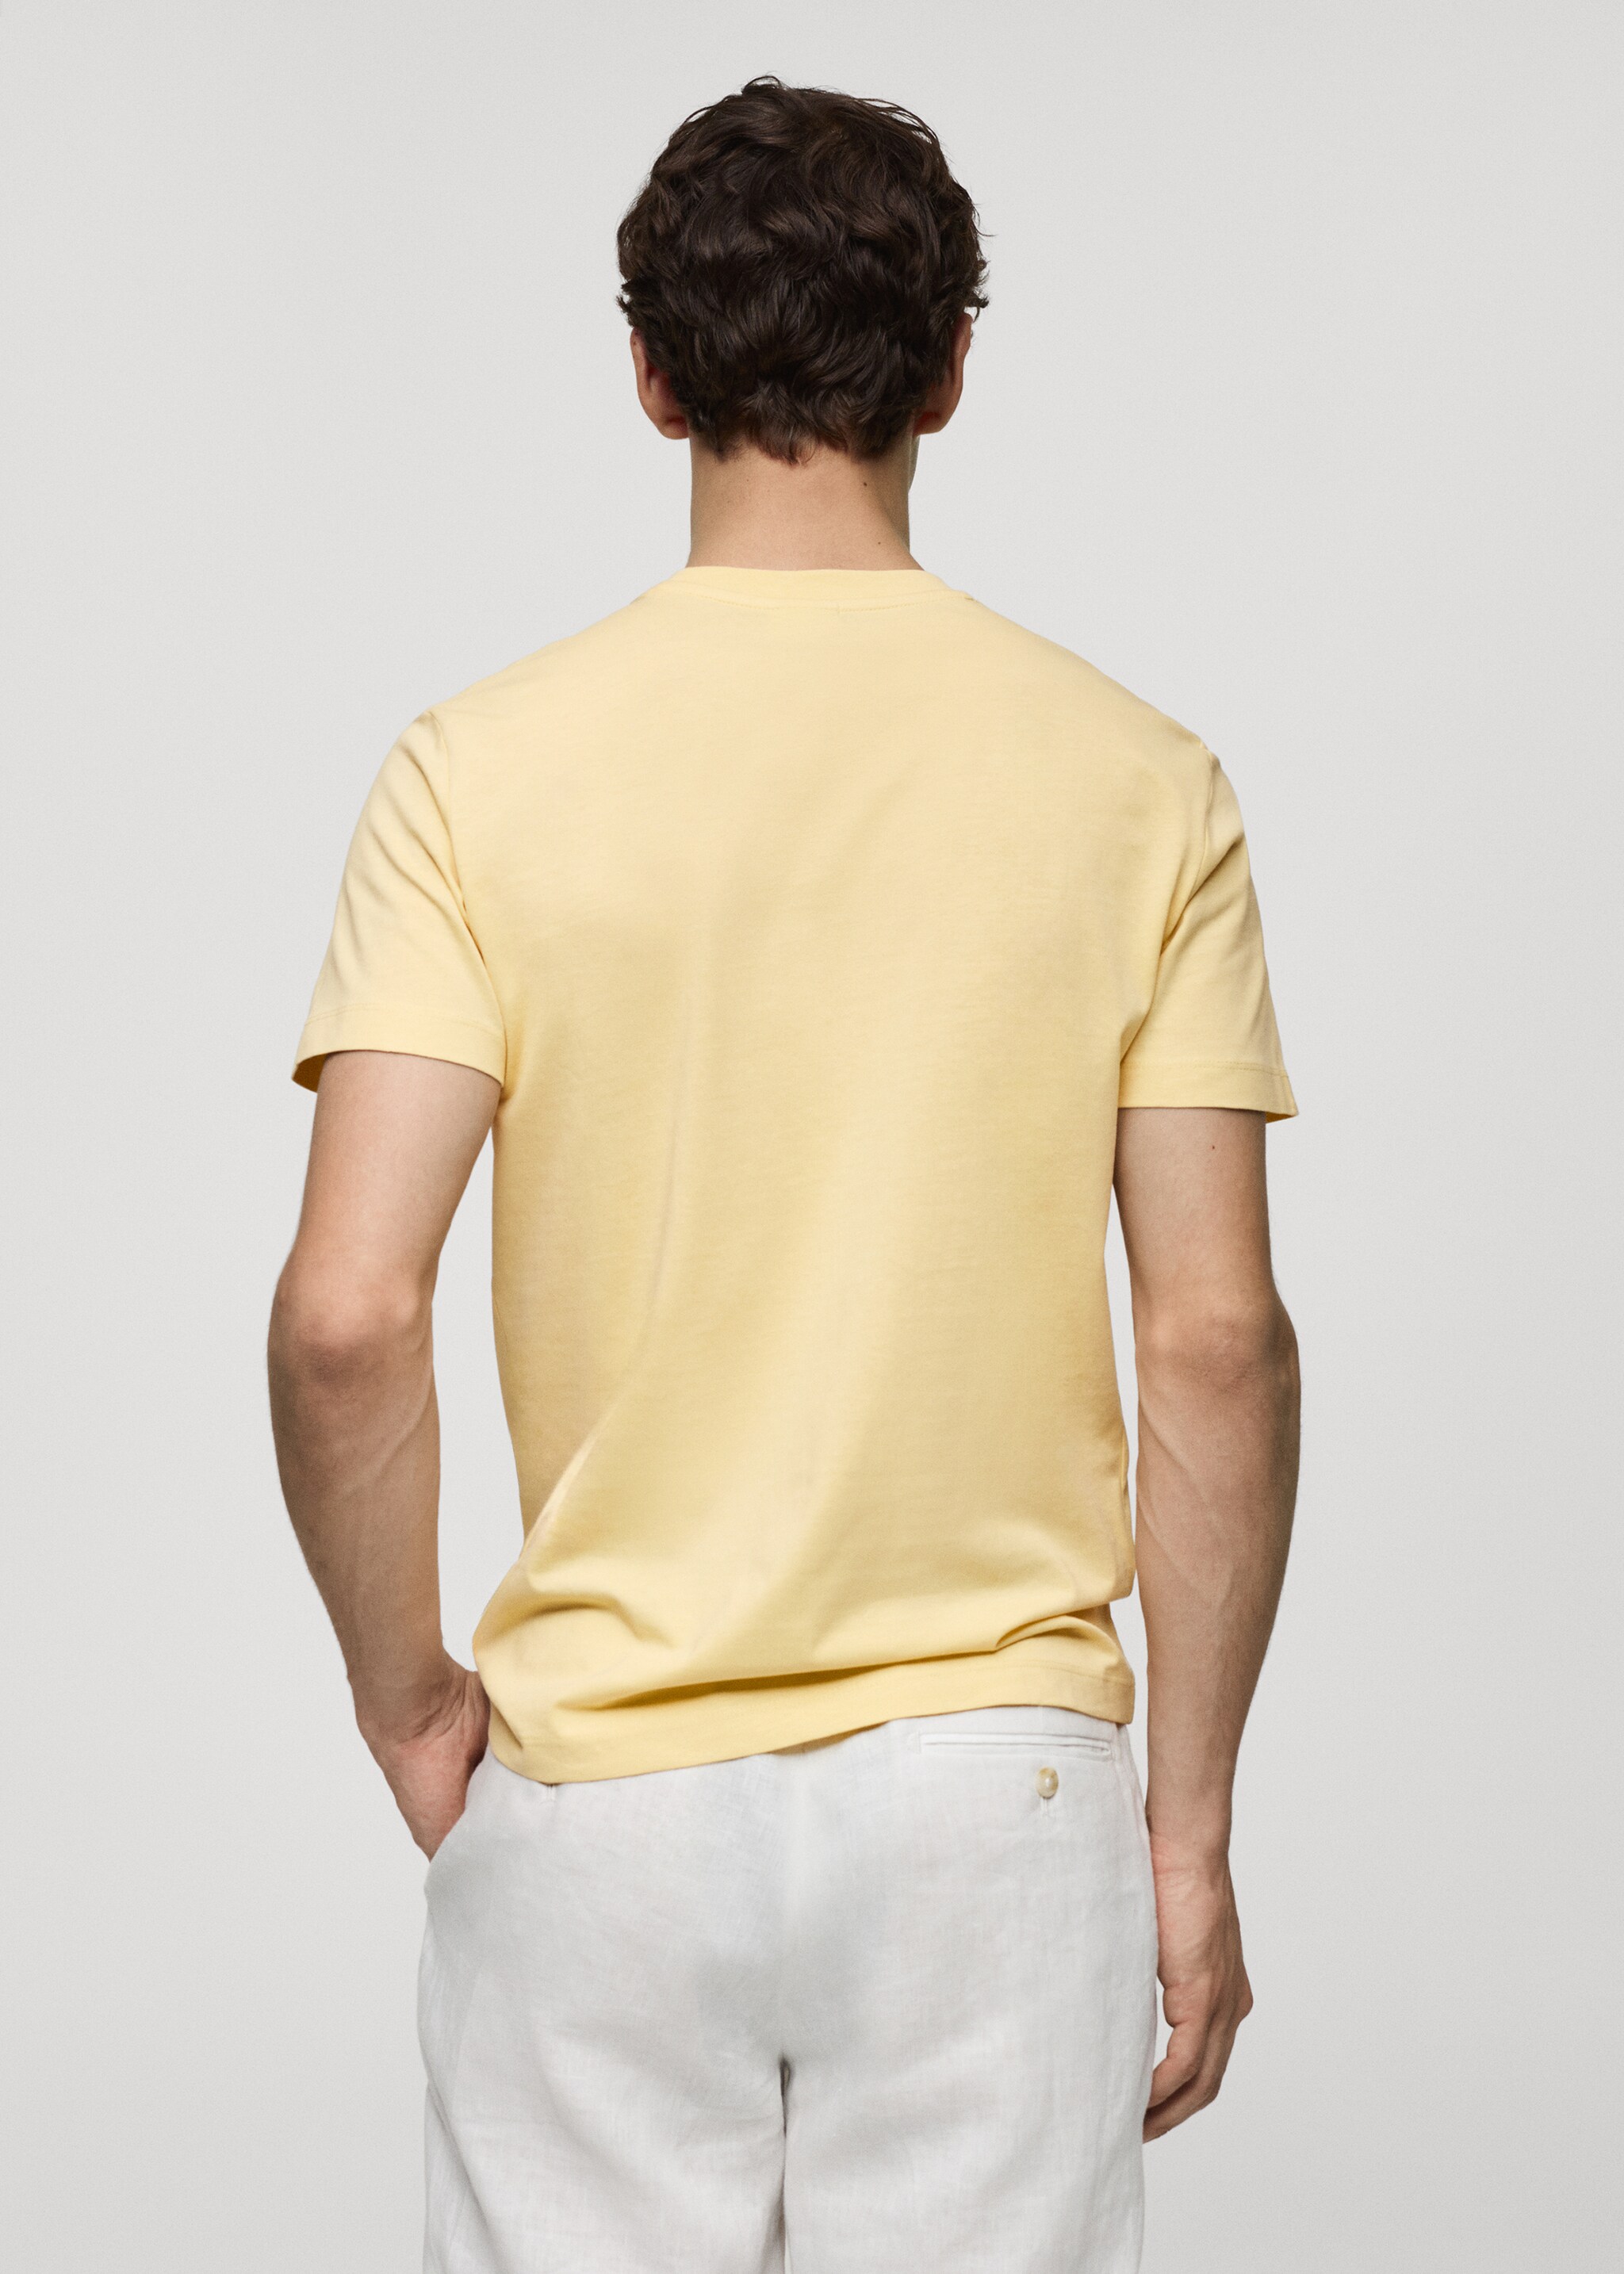 Camiseta básica algodón strech - Reverso del artículo